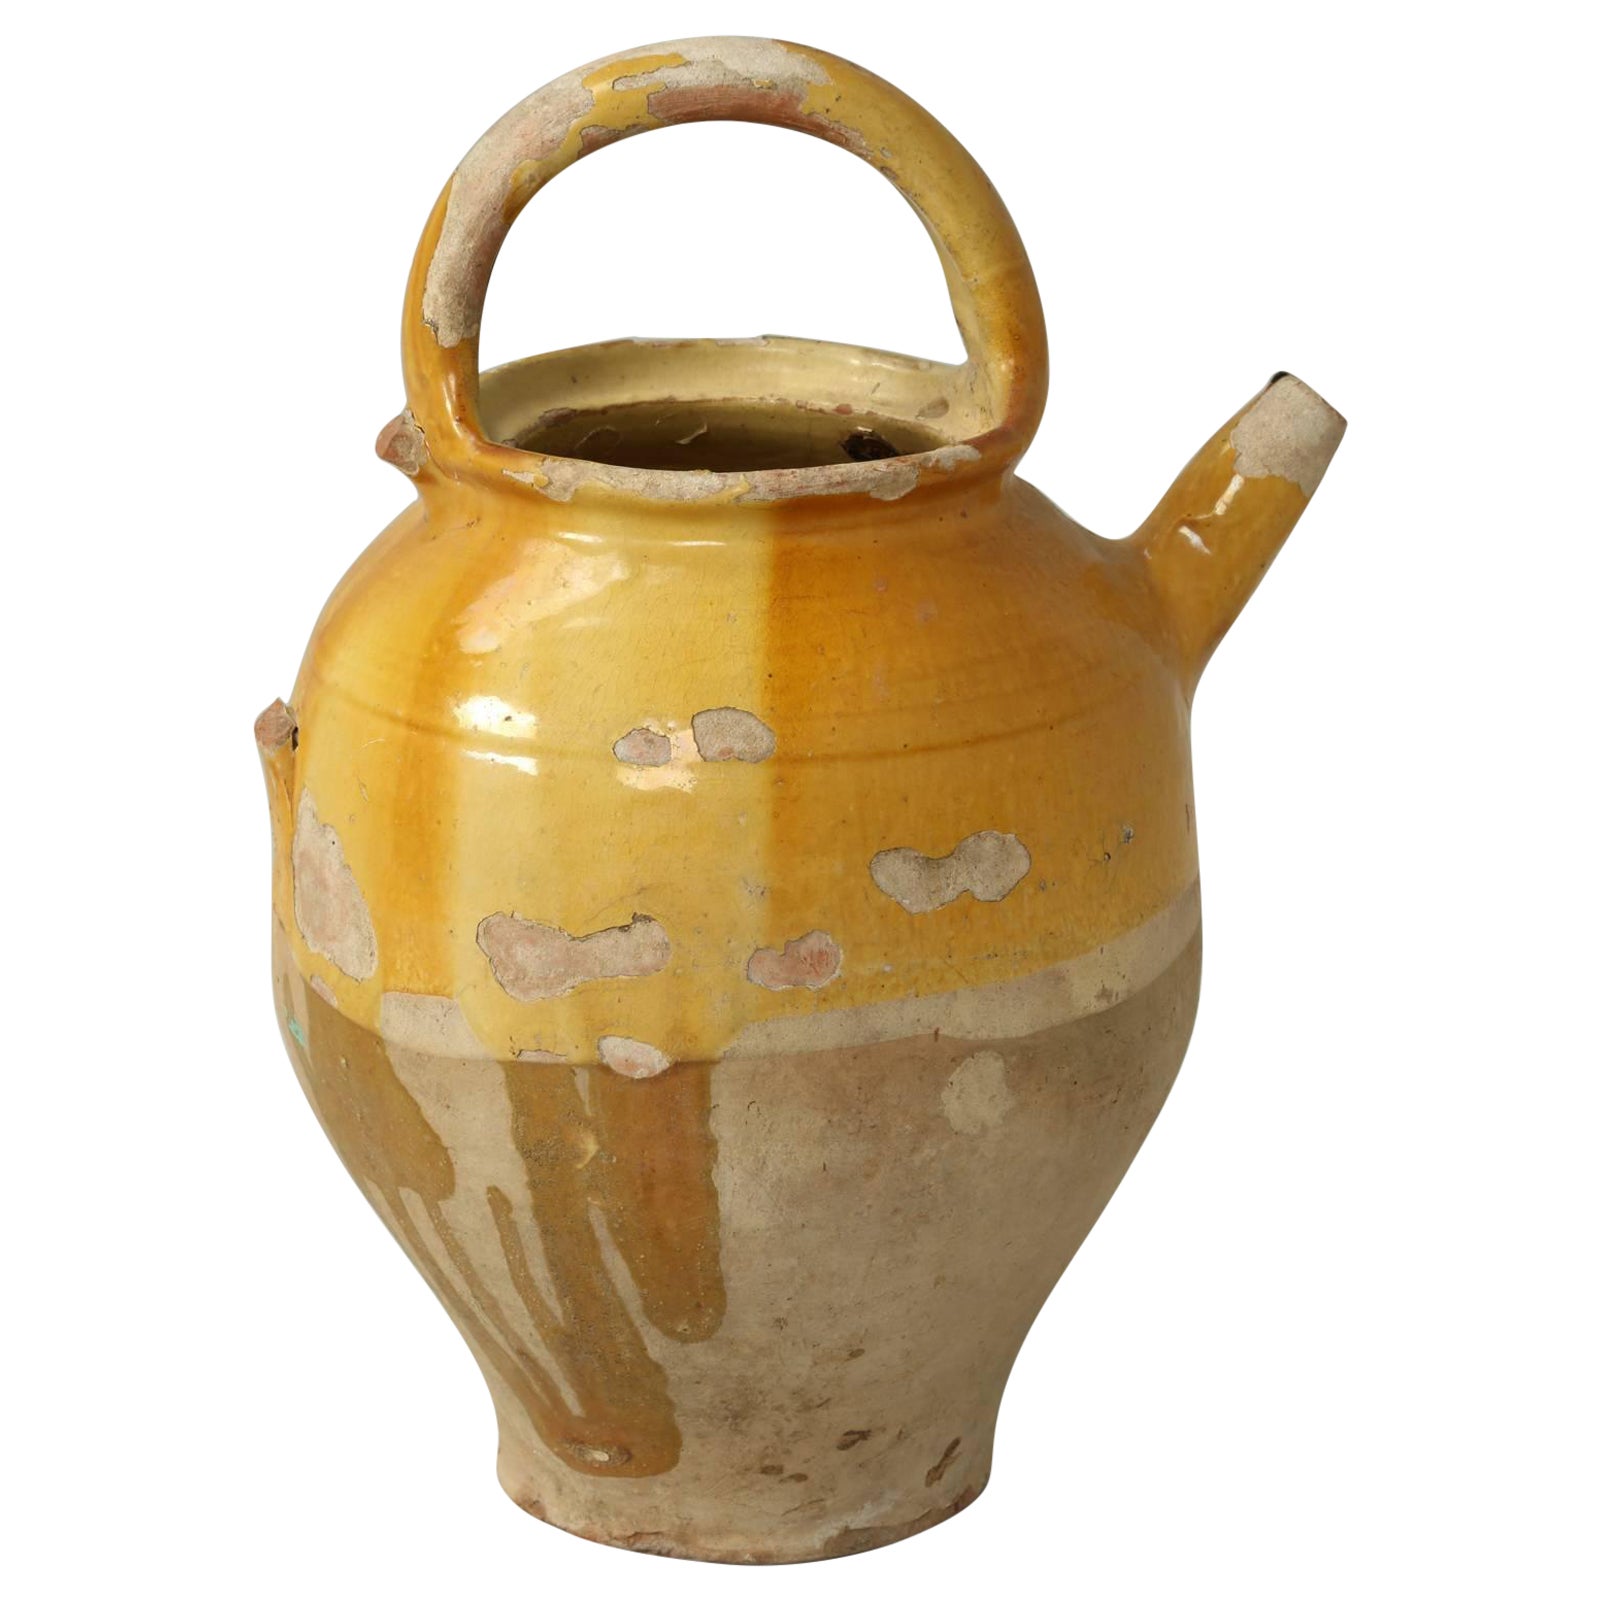 Pichet à eau ou « Crache » français ancien en céramique avec petite poignée latérale manquante